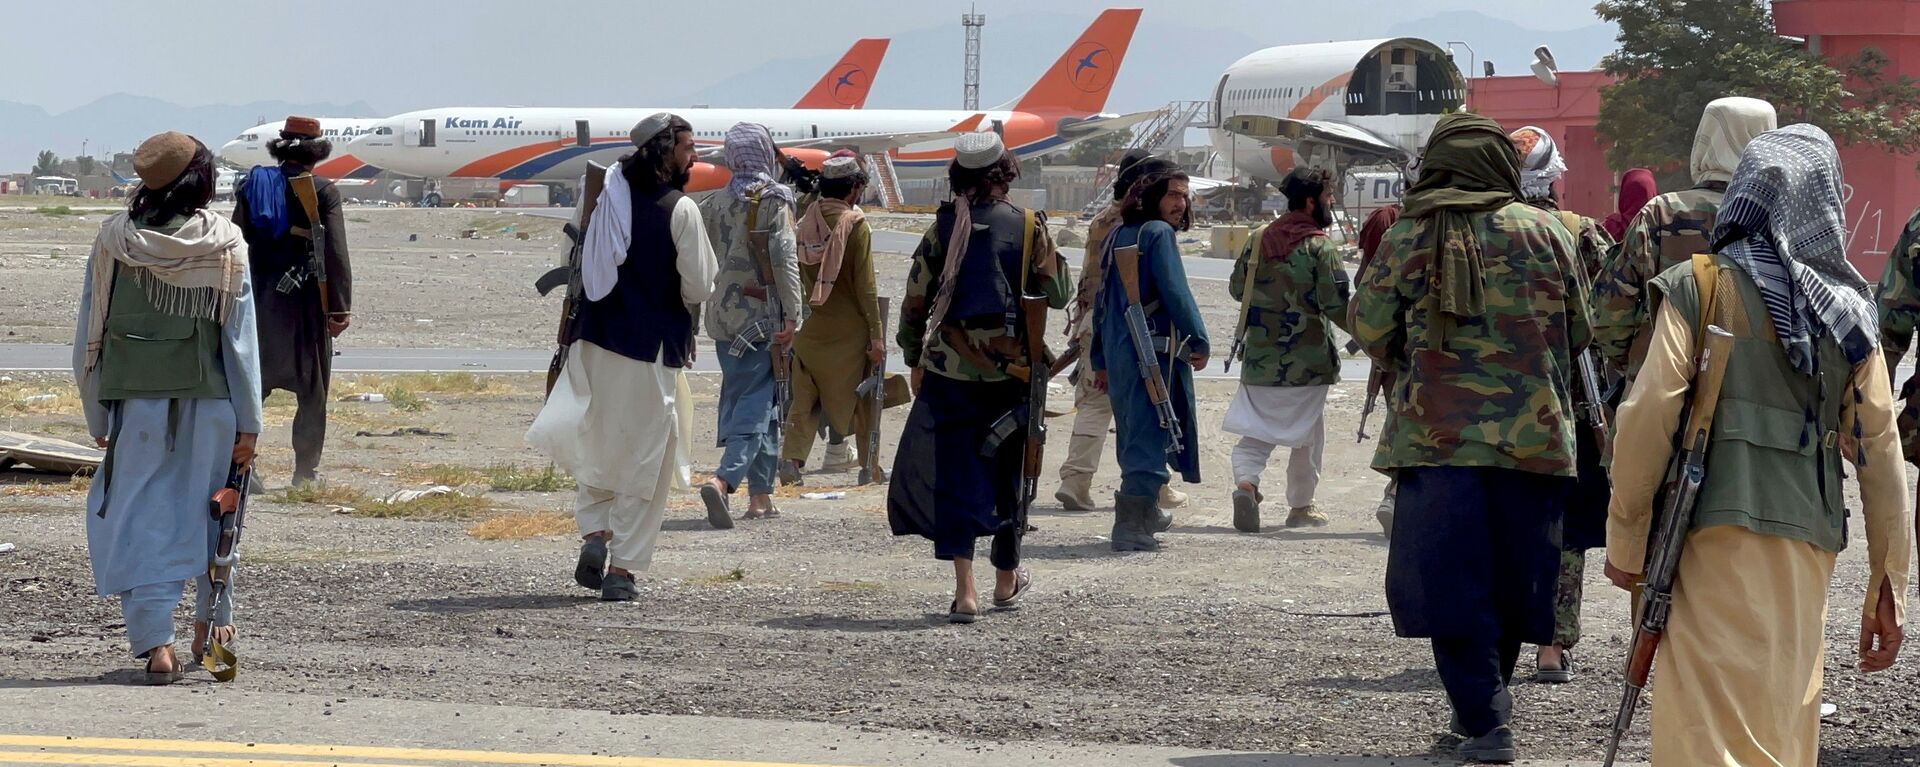 عناصر حركة طالبان تسيطر على مطار حامد كرزاي الدولي في كابول، أفغانستان 31 أغسطس 2021 - سبوتنيك عربي, 1920, 13.09.2021